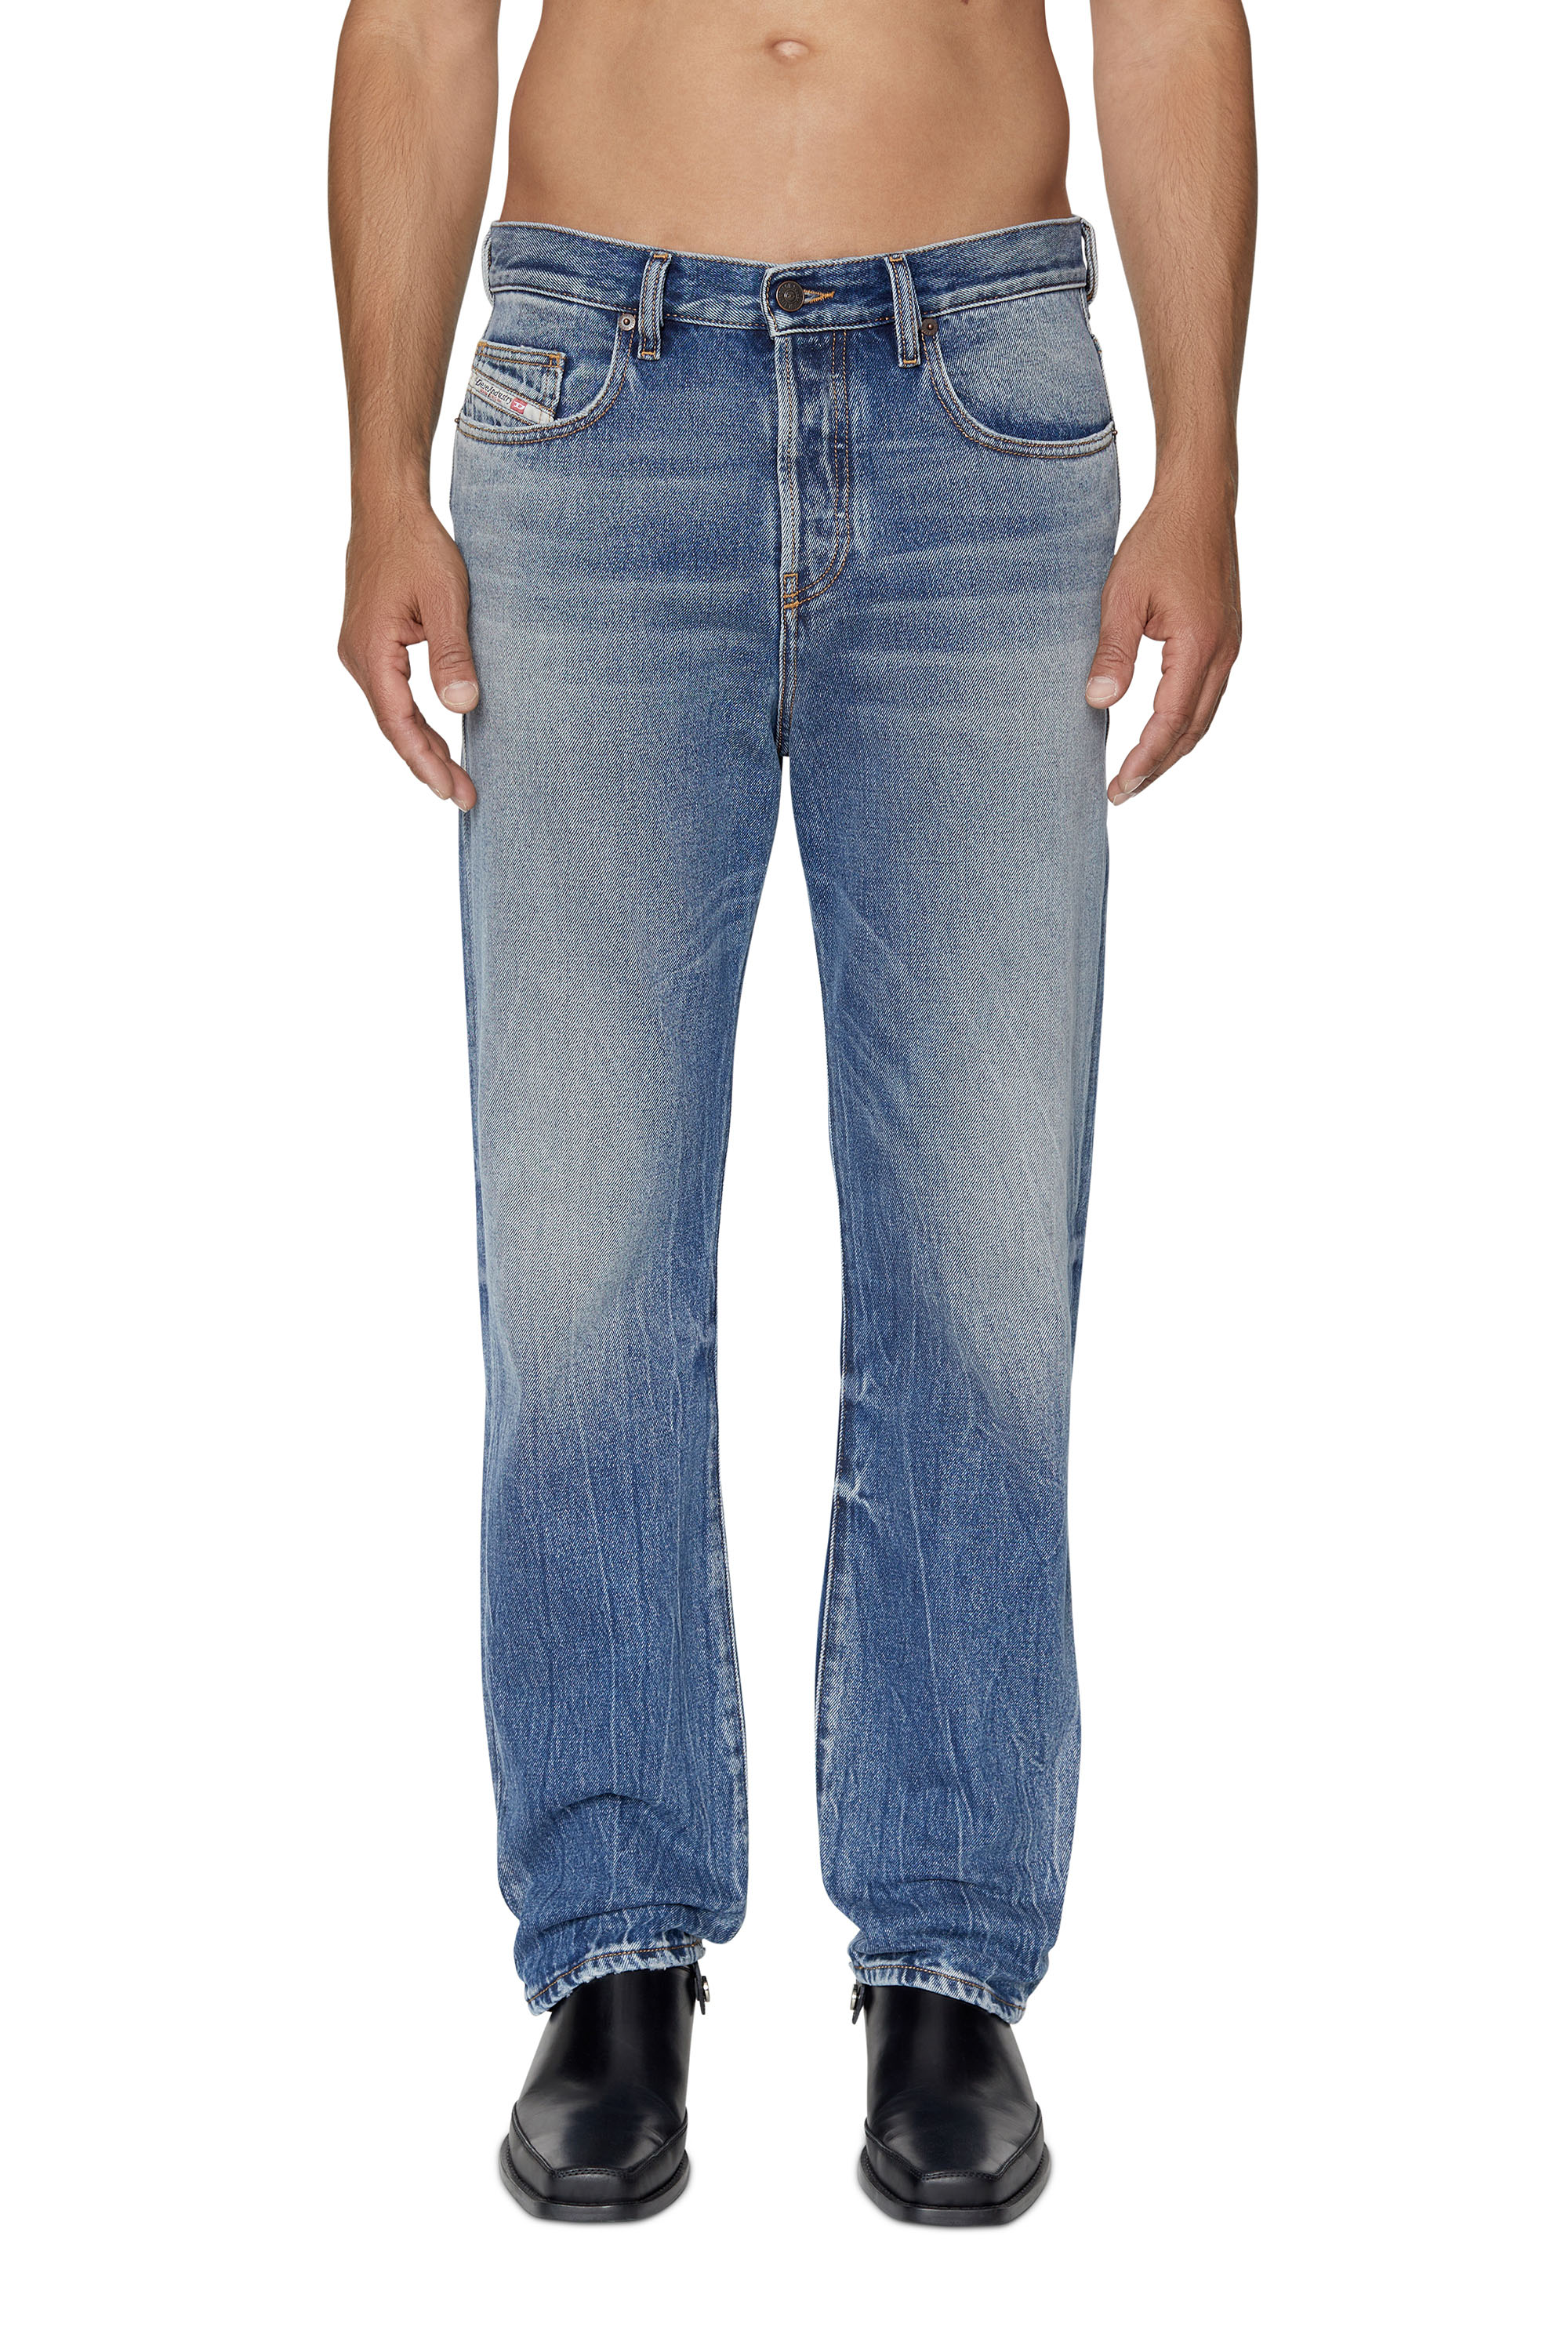 2020 D-VIKER 09D55 Straight Jeans, Blu medio - Jeans